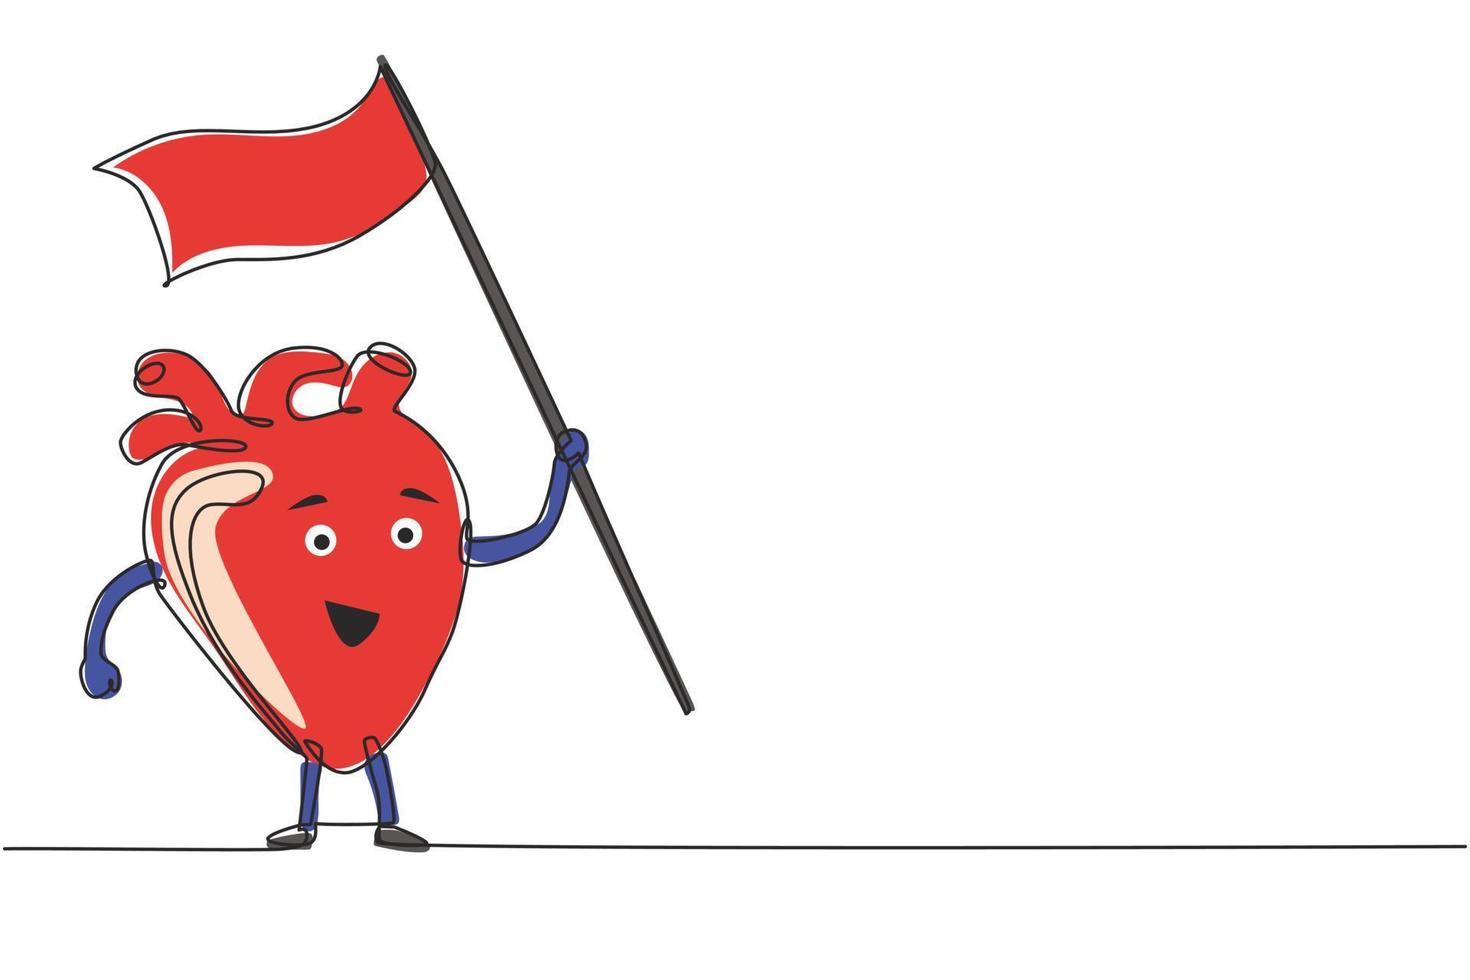 enkele doorlopende lijntekening karakter van hart met witte vlag. menselijk hart orgel staande met vlag. plat ontwerp van hartorgel voor onderwijsthema. één lijn tekenen ontwerp vectorillustratie vector